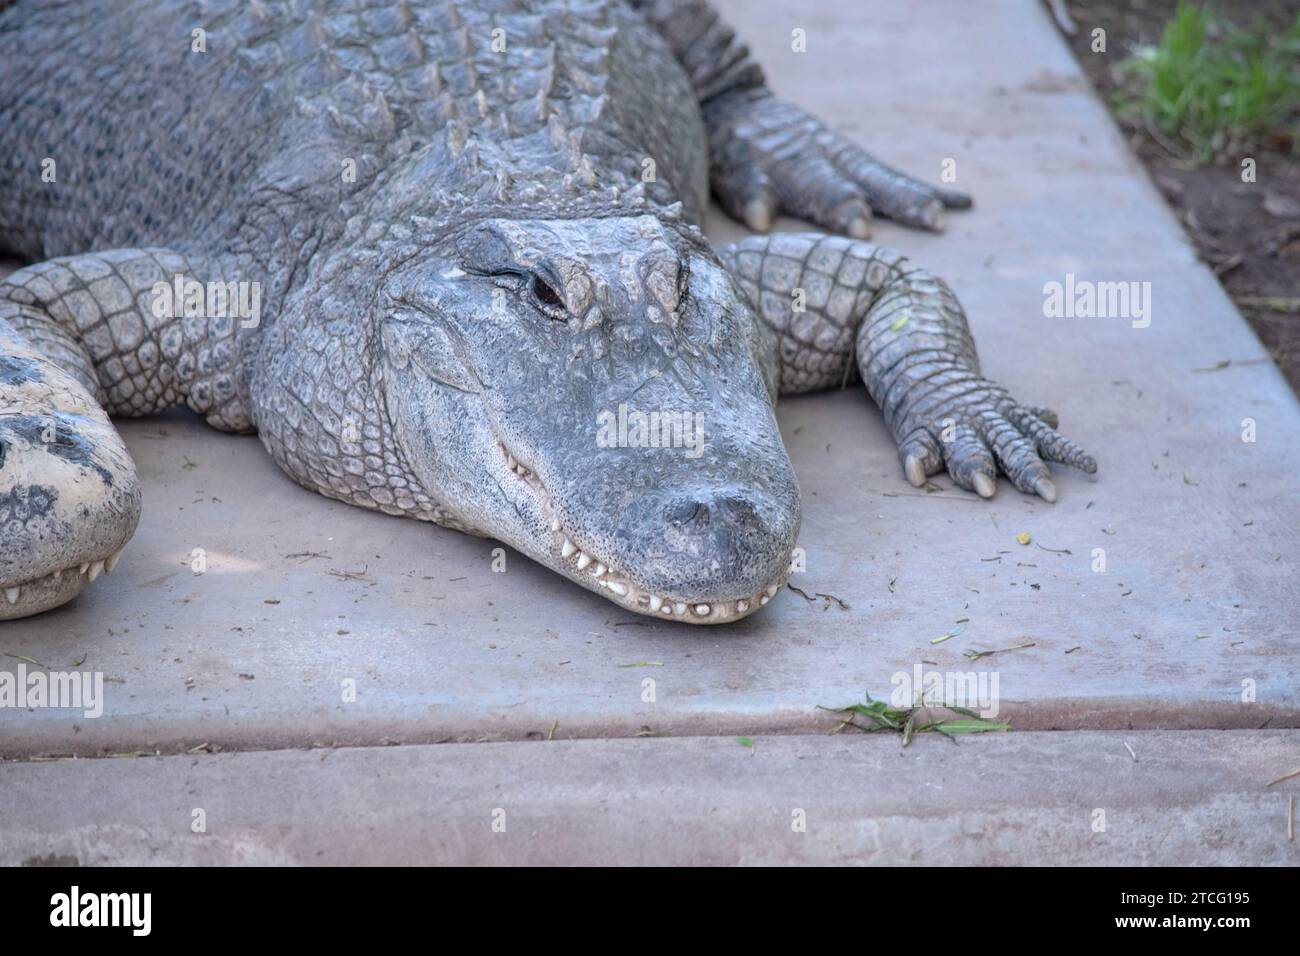 Les alligators ont un long museau arrondi qui a des narines orientées vers le haut à l'extrémité Banque D'Images